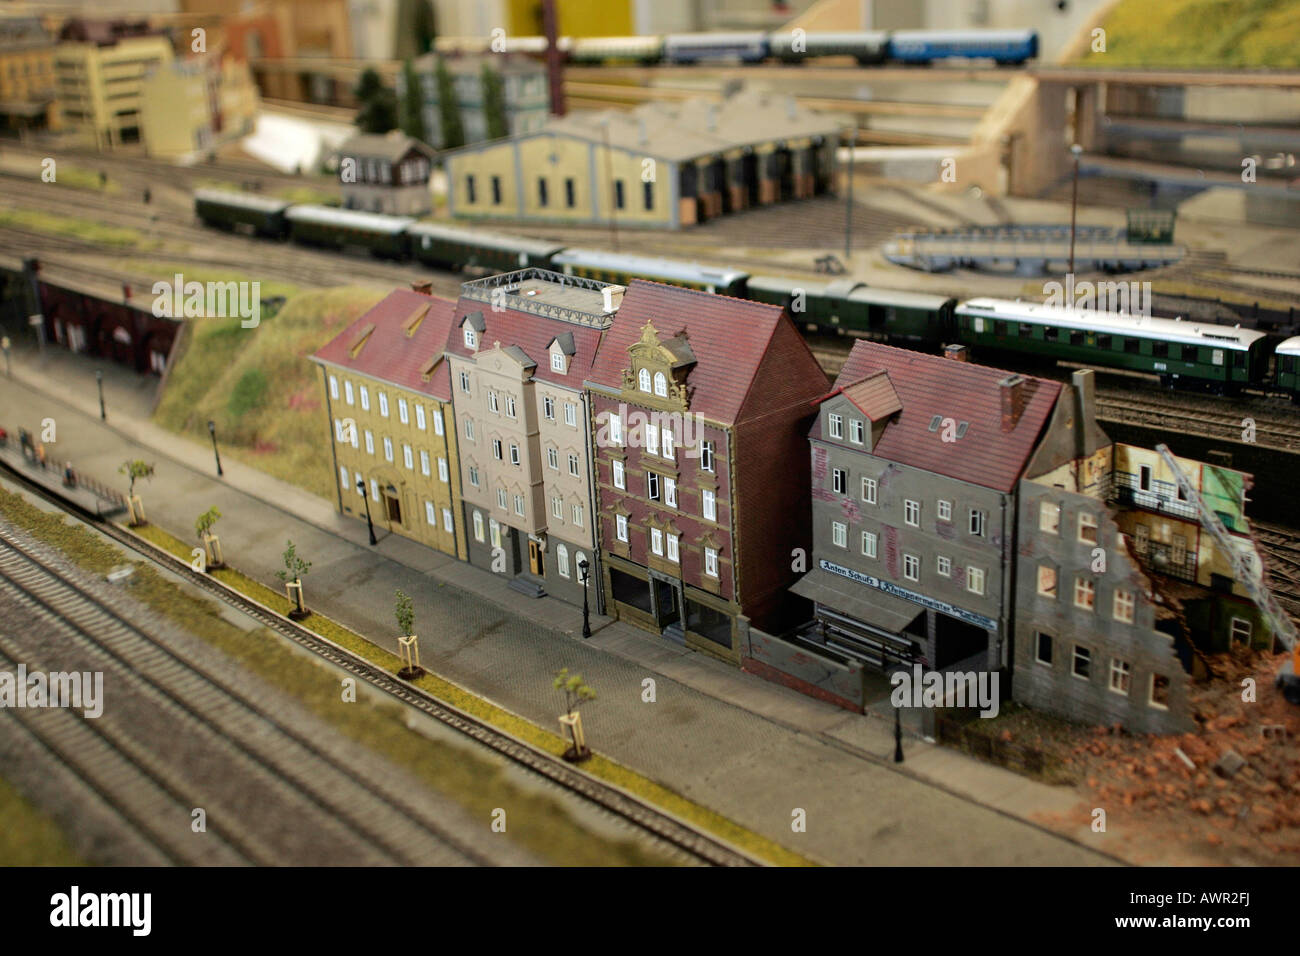 Usine de fer modèle avec des cours et des bâtiments. Dresde, Saxe, Allemagne Banque D'Images